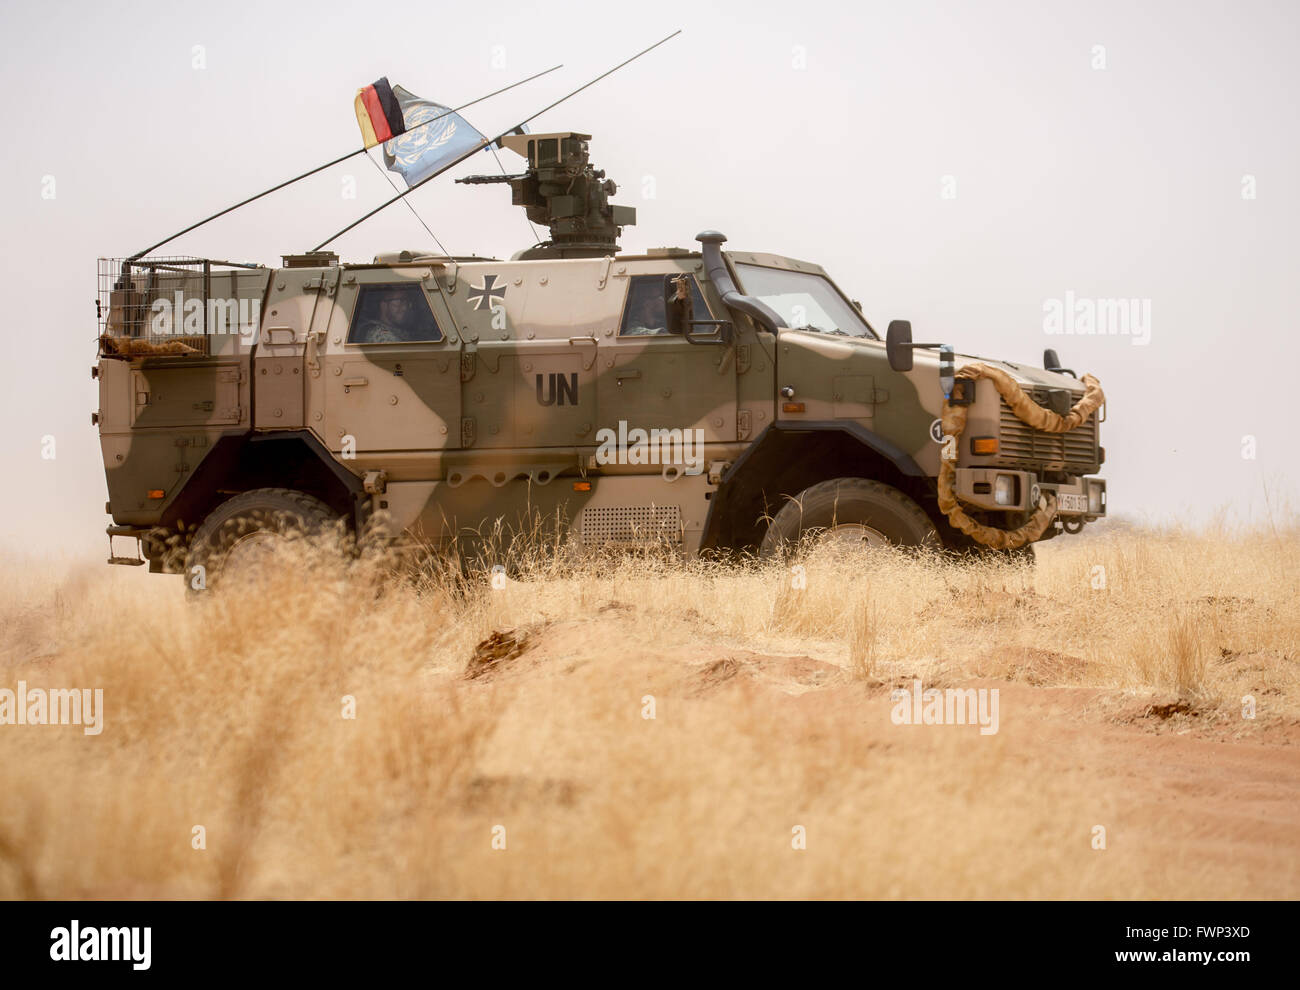 Ein gepanzertes Dingo 2 Fahrzeug während eines Bohrers am Camp Castor in Gao, Mali, 5. April 2016 abgebildet. Mitglieder der deutschen bewaffneten Kräfte (Bundeswehr) wurden in der Region im Rahmen der UN-Mission MINUSMA bereitgestellt. Foto: MICHAEL KAPPELER/dpa Stockfoto